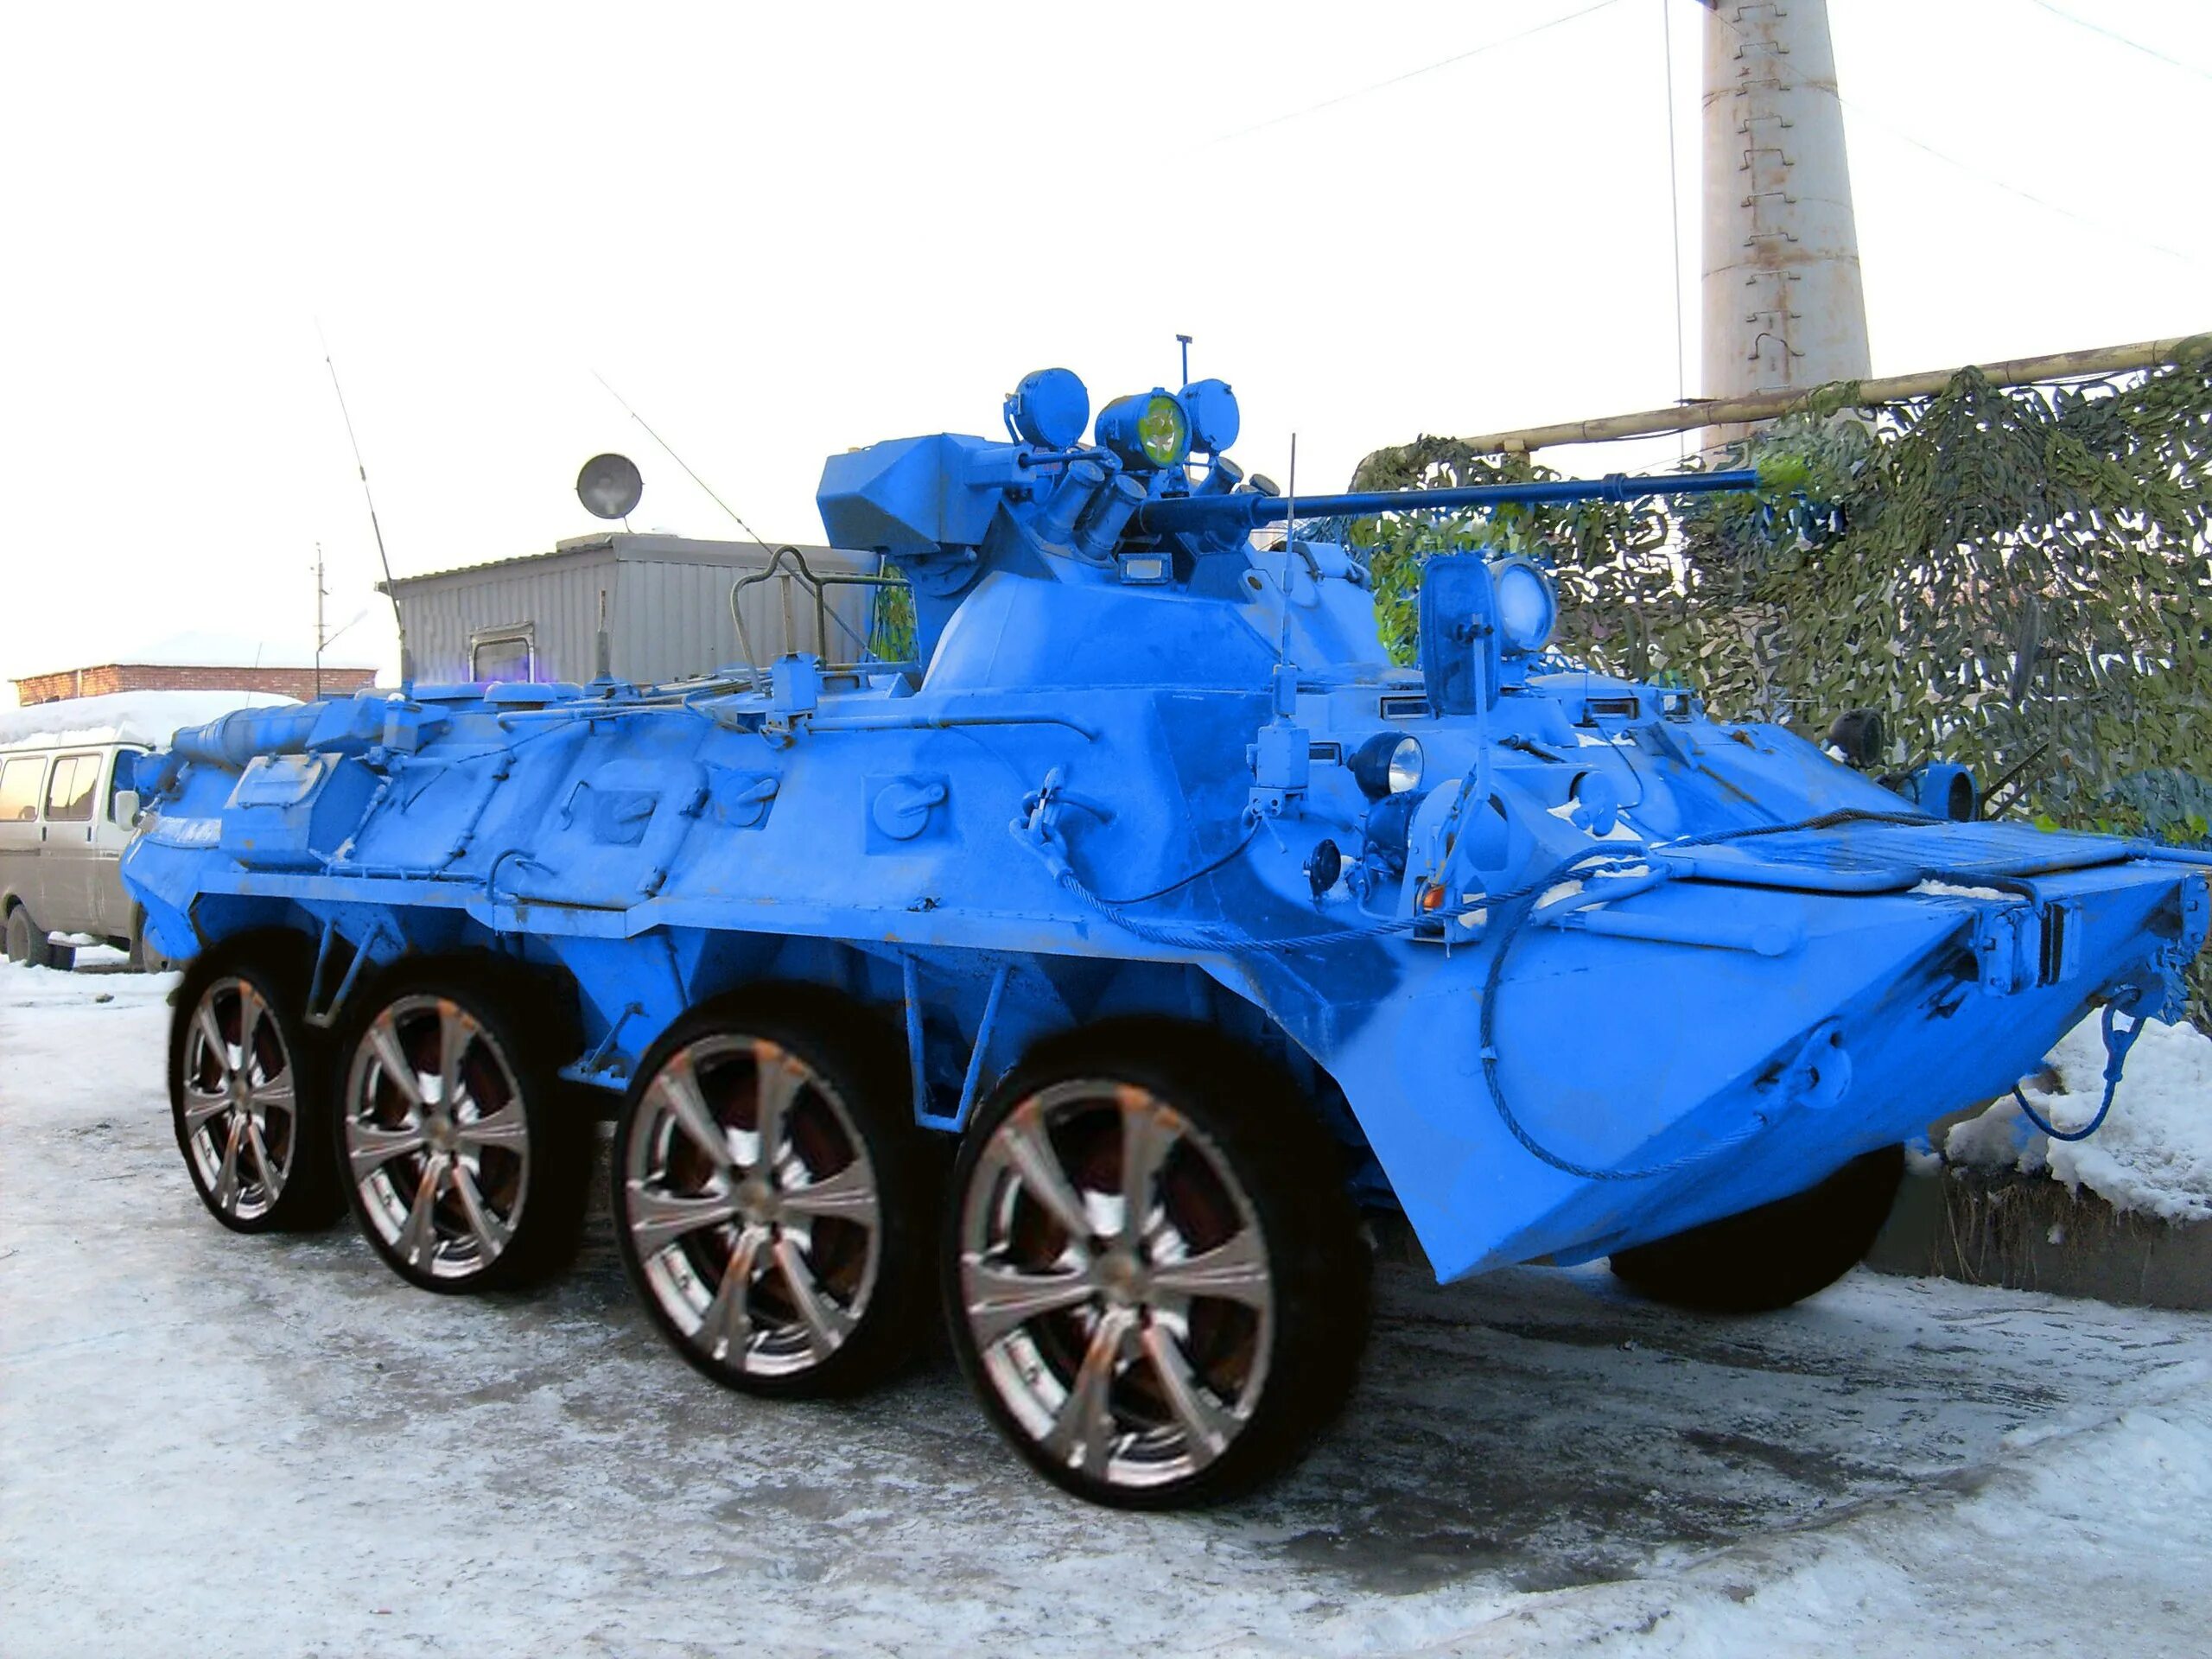 Tank tune. Тюнингованный БТР 80. ГАЗ-59037 (БТР-80). БТР-60 тюнингованный. Вездеход ГАЗ-59037 (БТР-80).